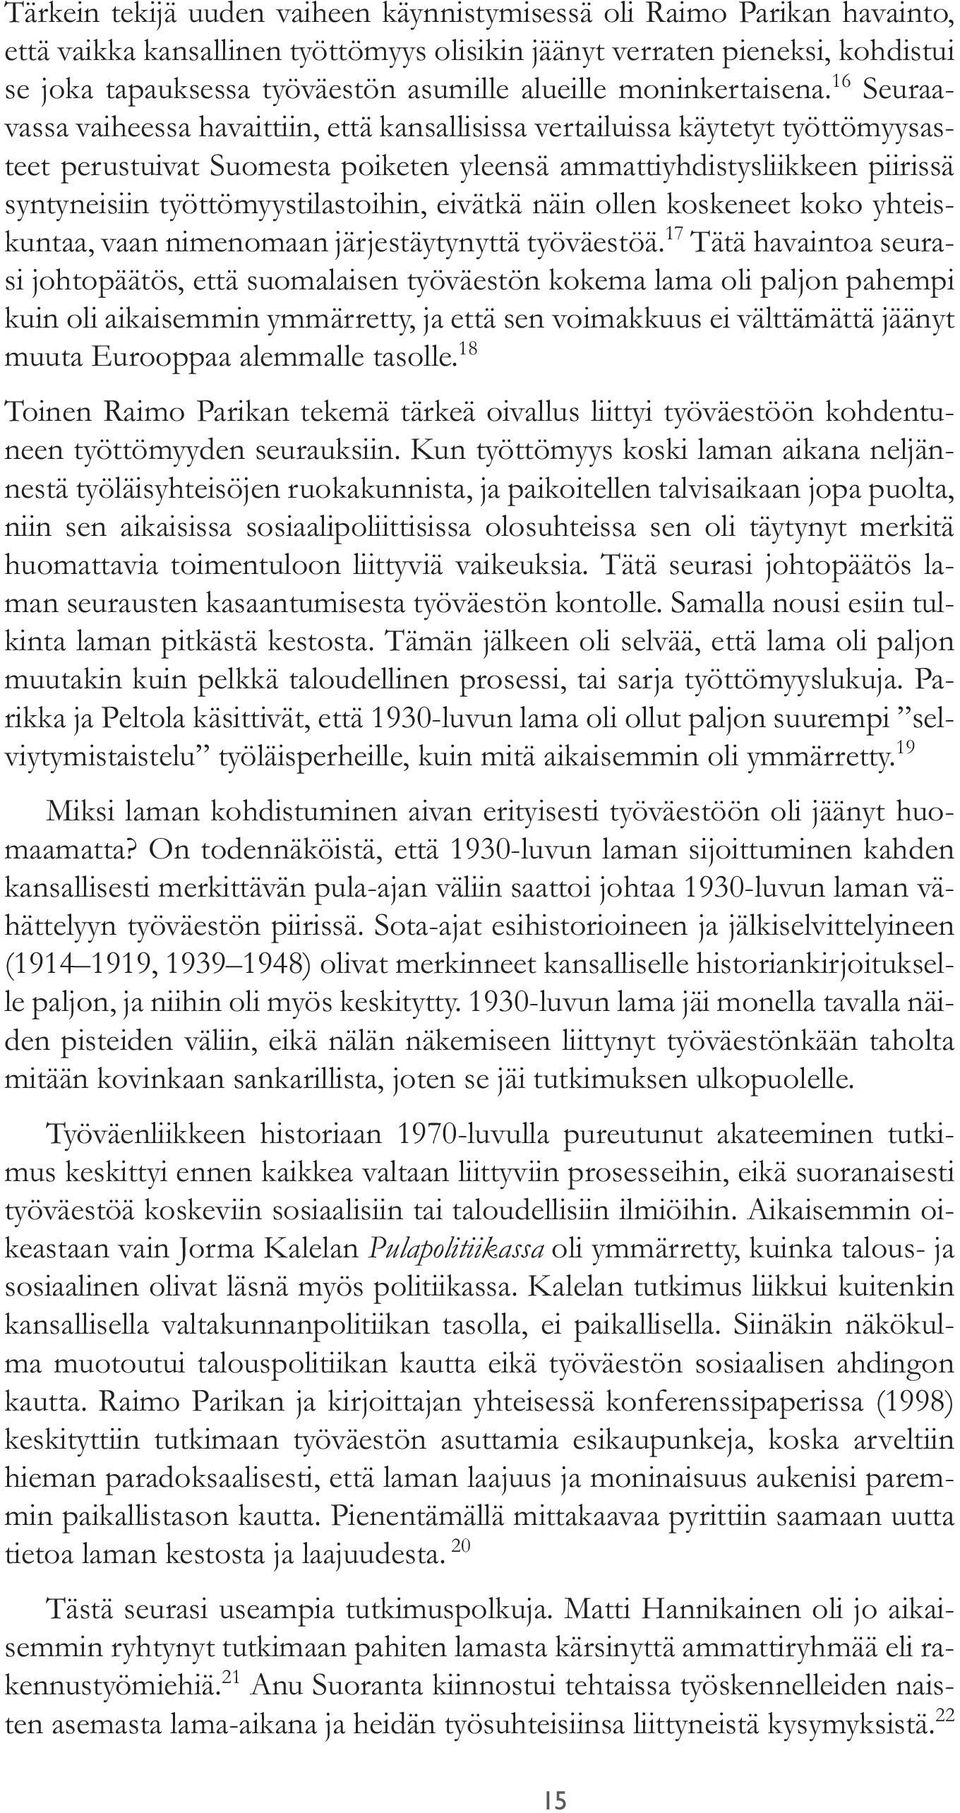 16 Seuraavassa vaiheessa havaittiin, että kansallisissa vertailuissa käytetyt työttömyysasteet perustuivat Suomesta poiketen yleensä ammattiyhdistysliikkeen piirissä syntyneisiin